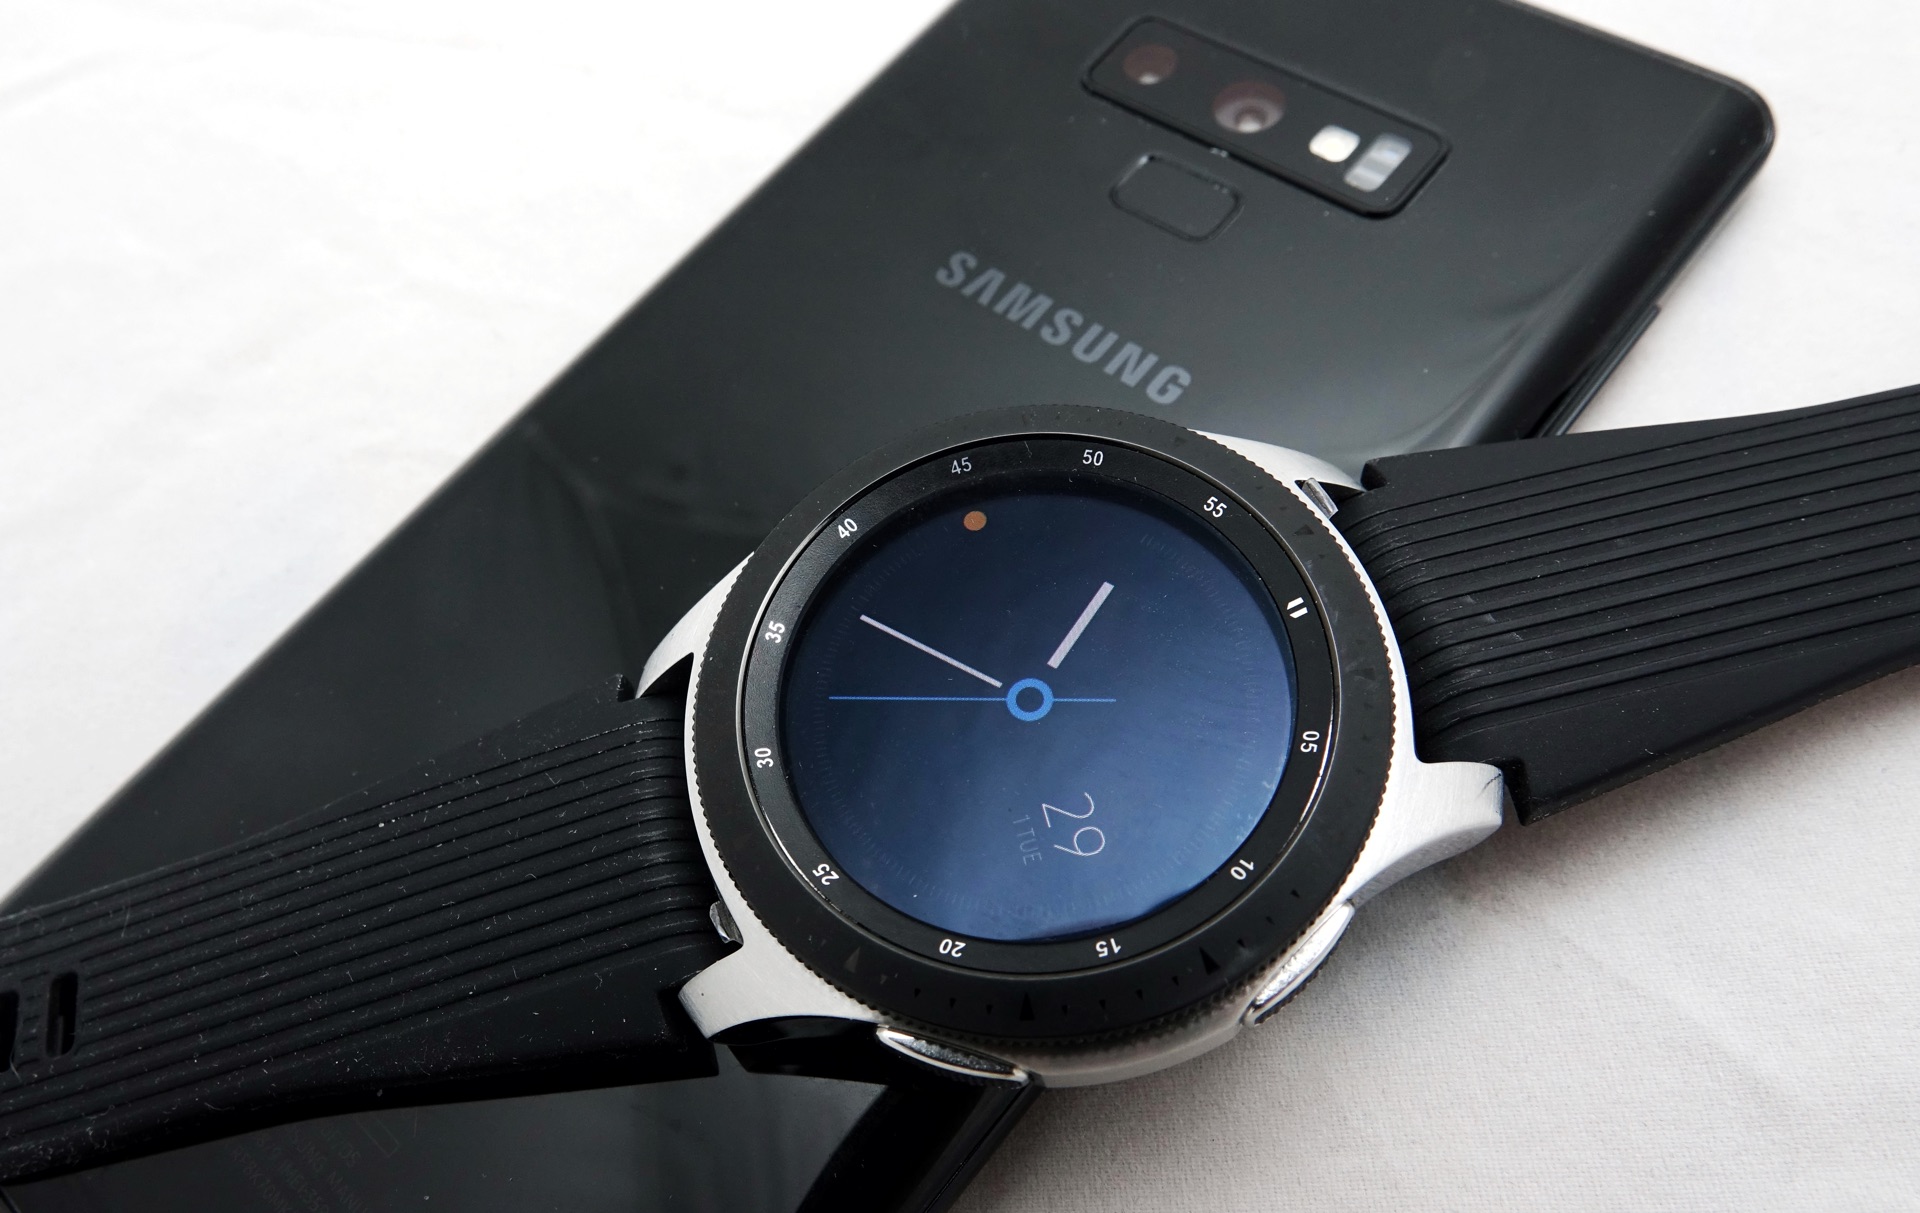 Galaxy watch 43. Samsung Galaxy watch 46mm. Samsung Galaxy watch SM-r800. Galaxy watch 46mm r800. Samsung Galaxy watch 4 45mm.